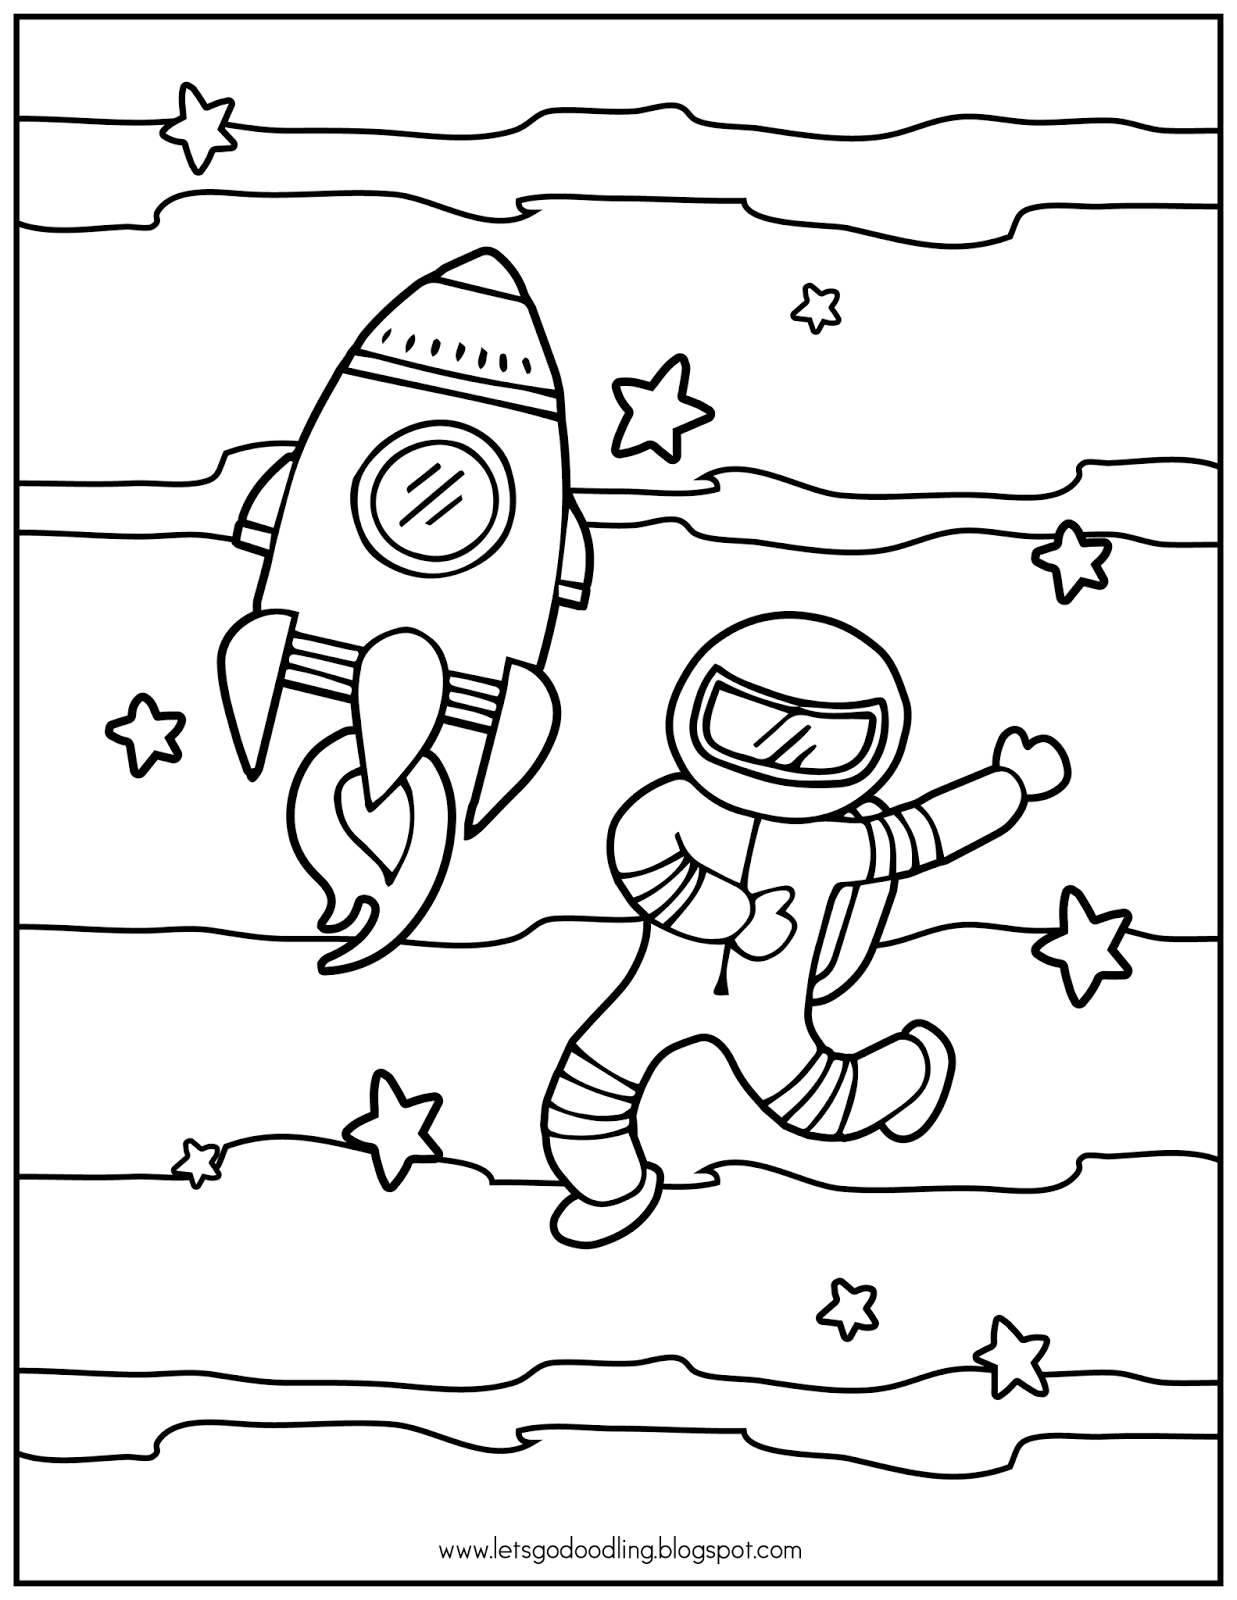 Шаблон космонавта для поделки ко дню космонавтики. Космонавт раскраска для детей. Космос раскраска для детей. Рисунок ко Дню космонавтики. Раскраска день космонавтики для детей.